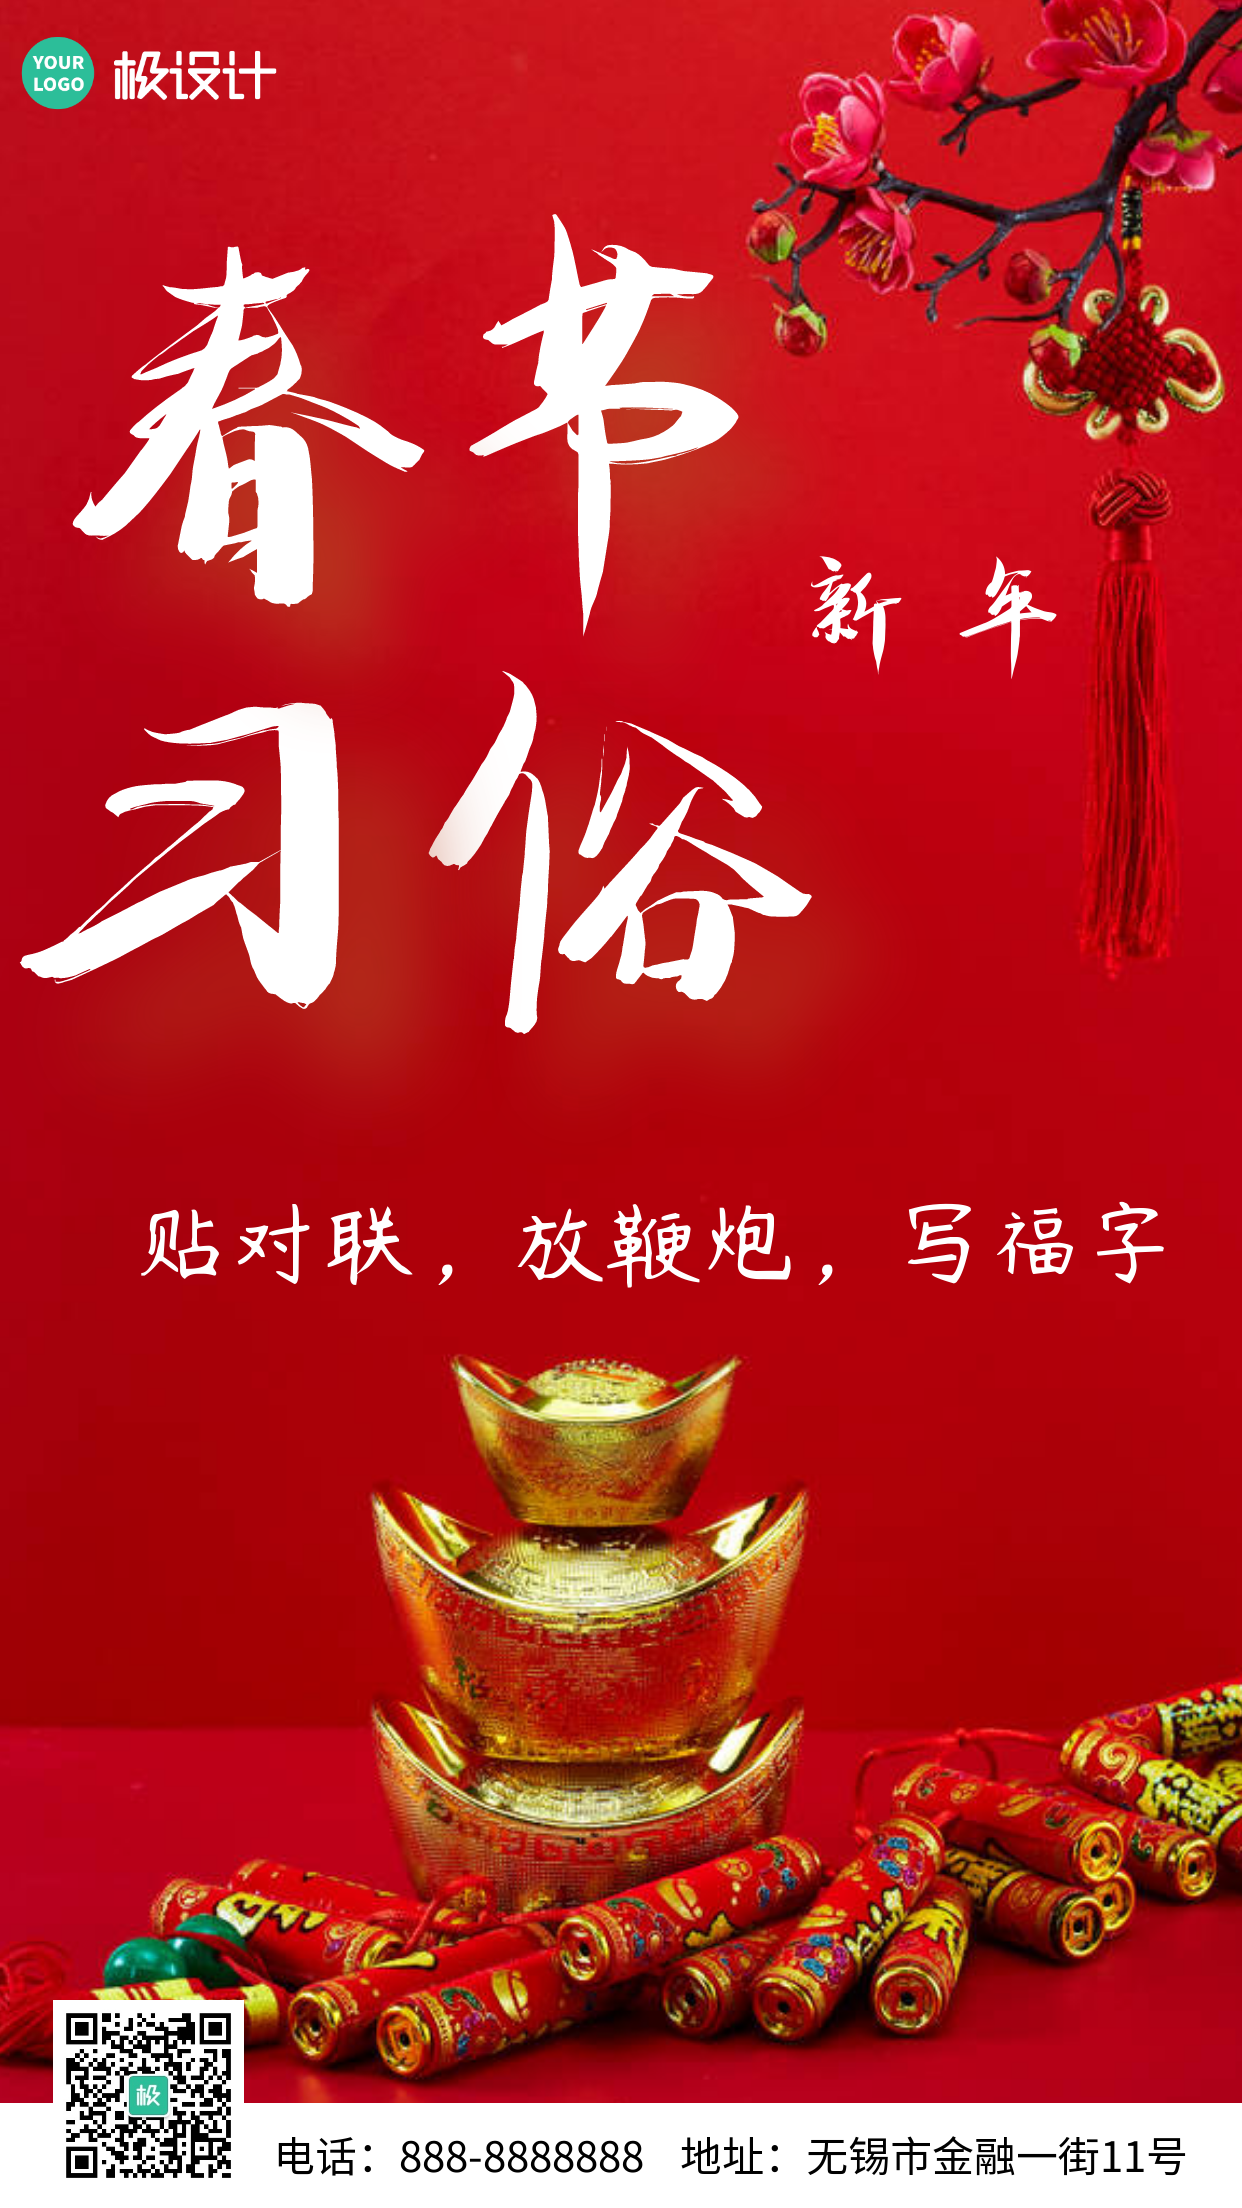 简约风格红色背景春节习俗贴春联宣传手机海报